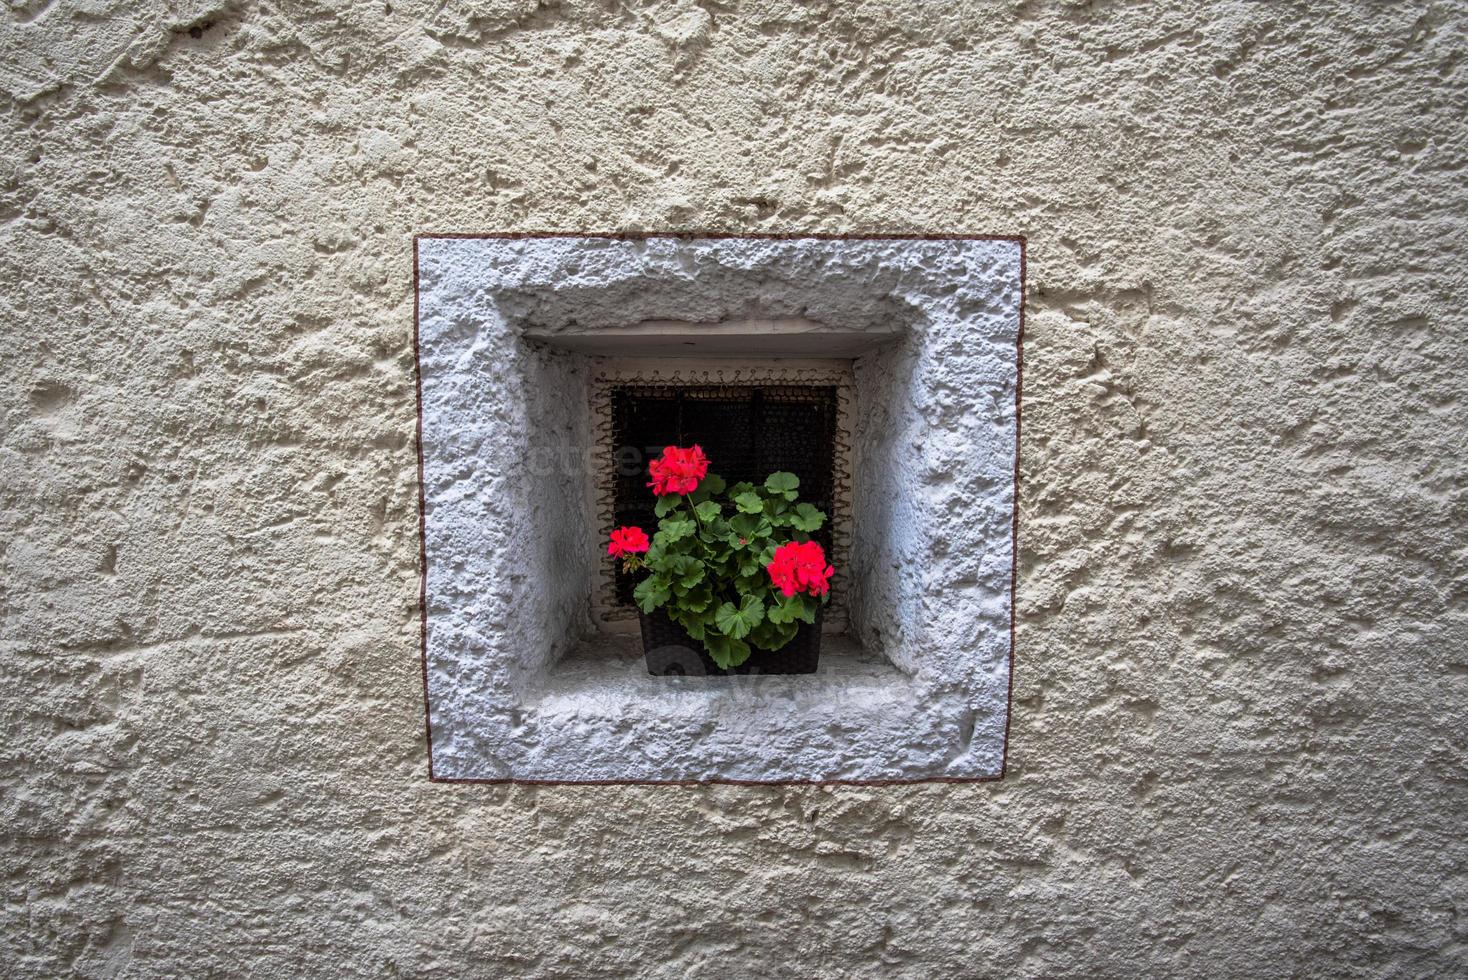 Vase of geraniums on a small square window in San Martino di Castrozza, Trento, Italy photo